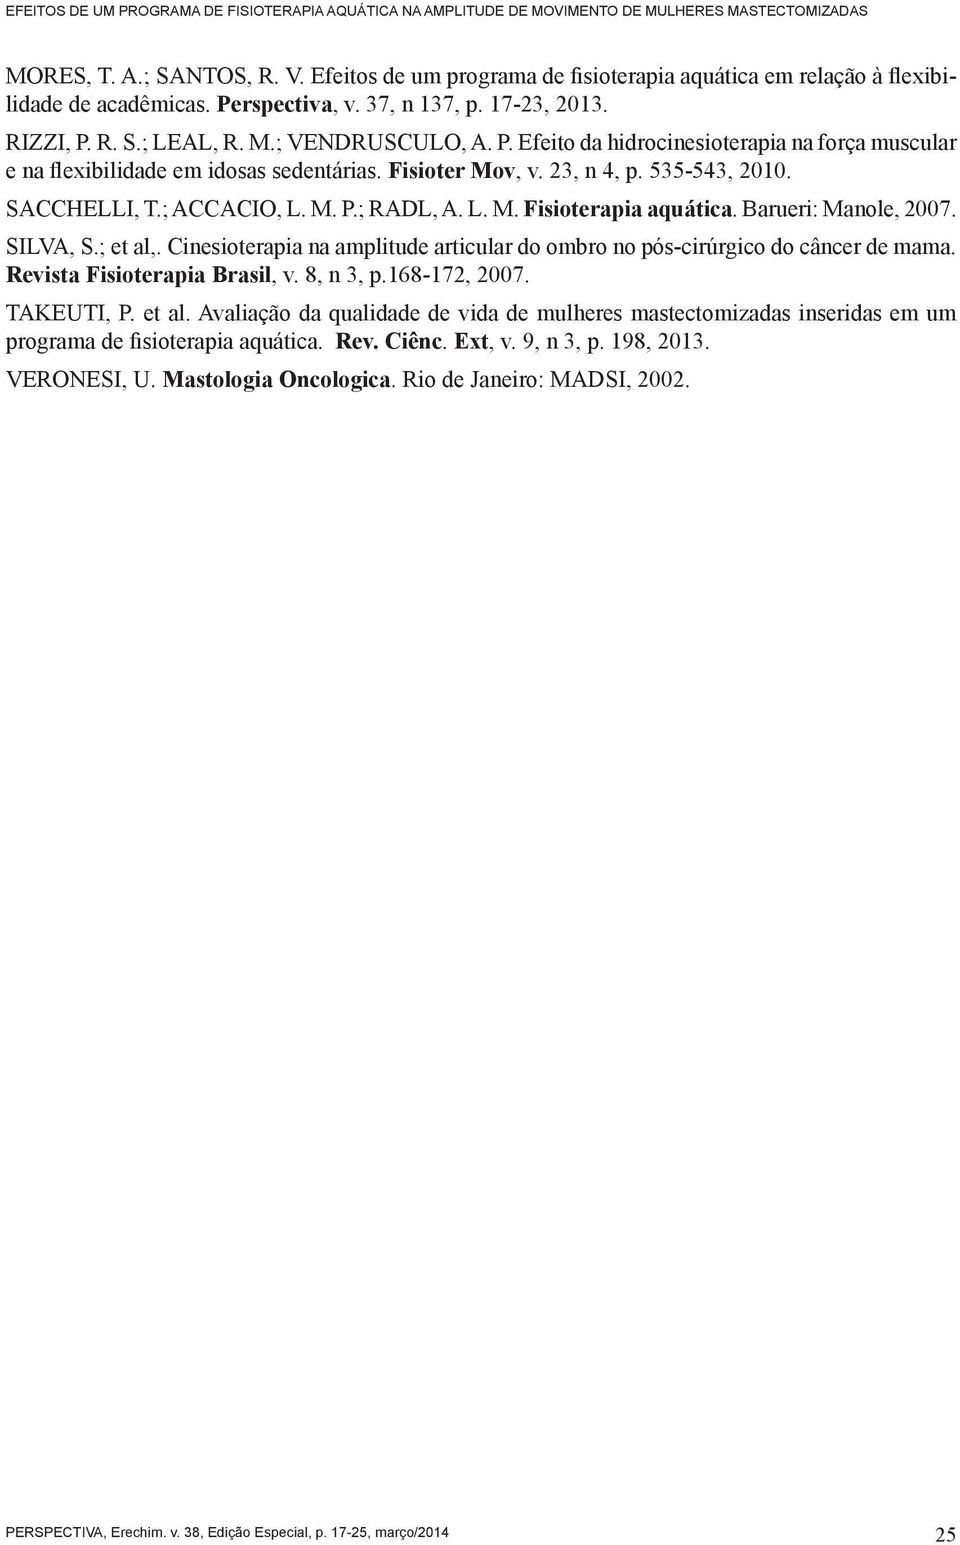 Fisioter Mov, v. 23, n 4, p. 535-543, 2010. SACCHELLI, T.; ACCACIO, L. M. P.; RADL, A. L. M. Fisioterapia aquática. Barueri: Manole, 2007. SILVA, S.; et al,.